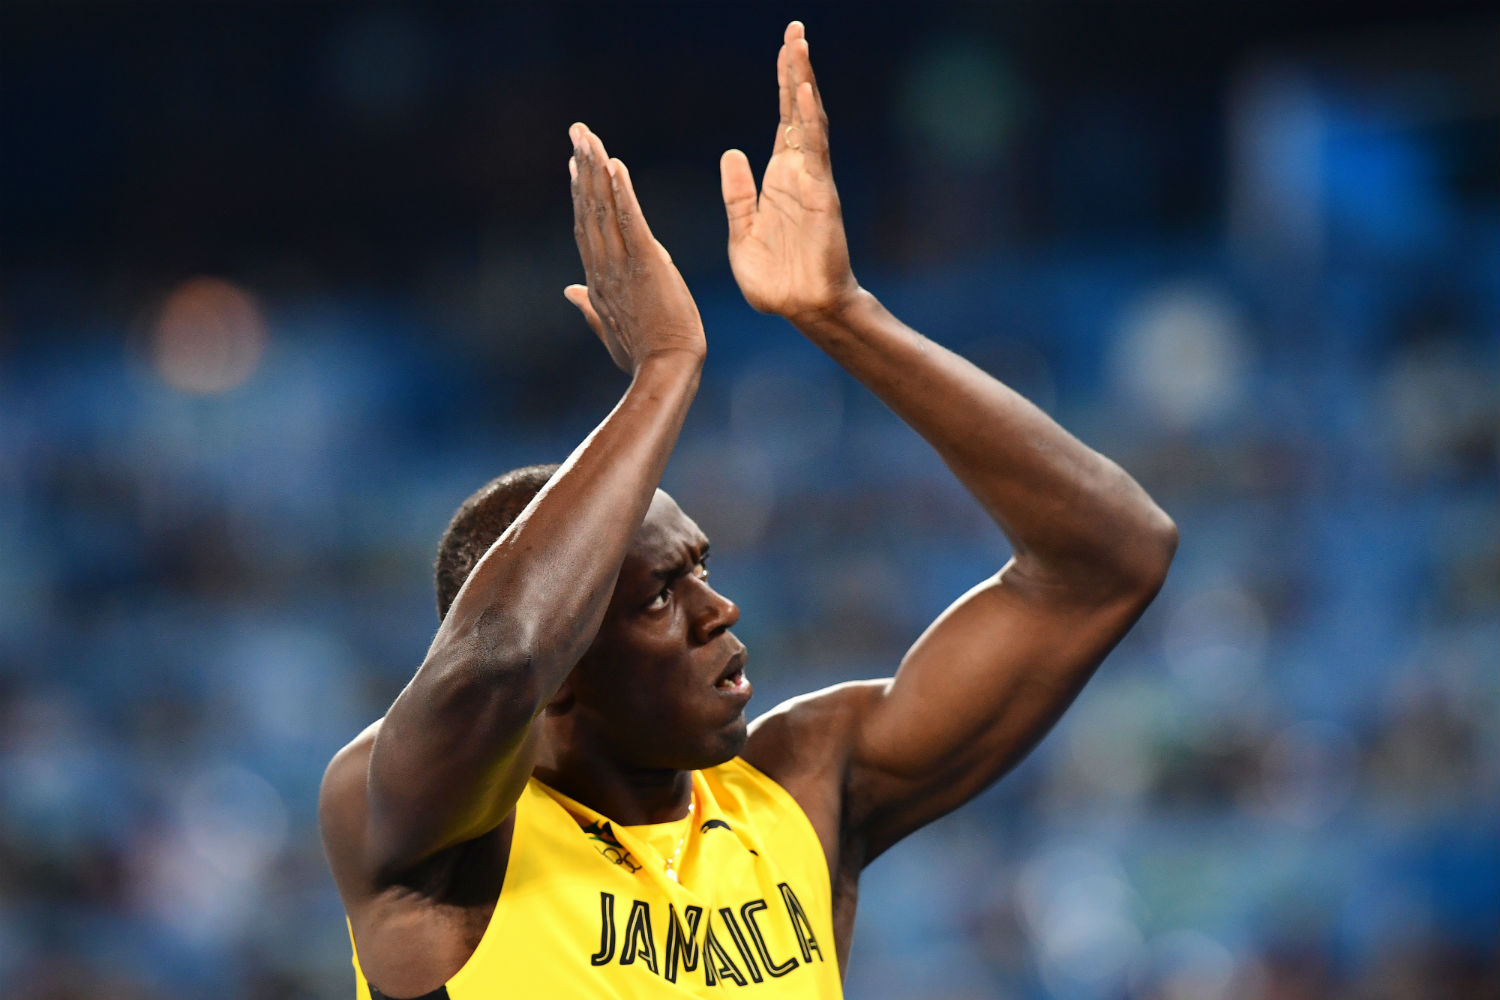 Usain Bolt comemora na pista após conquistar mais uma de suas 9 medalhas olímpicas da carreira no Rio (Foto Franck Fipe/AFP)